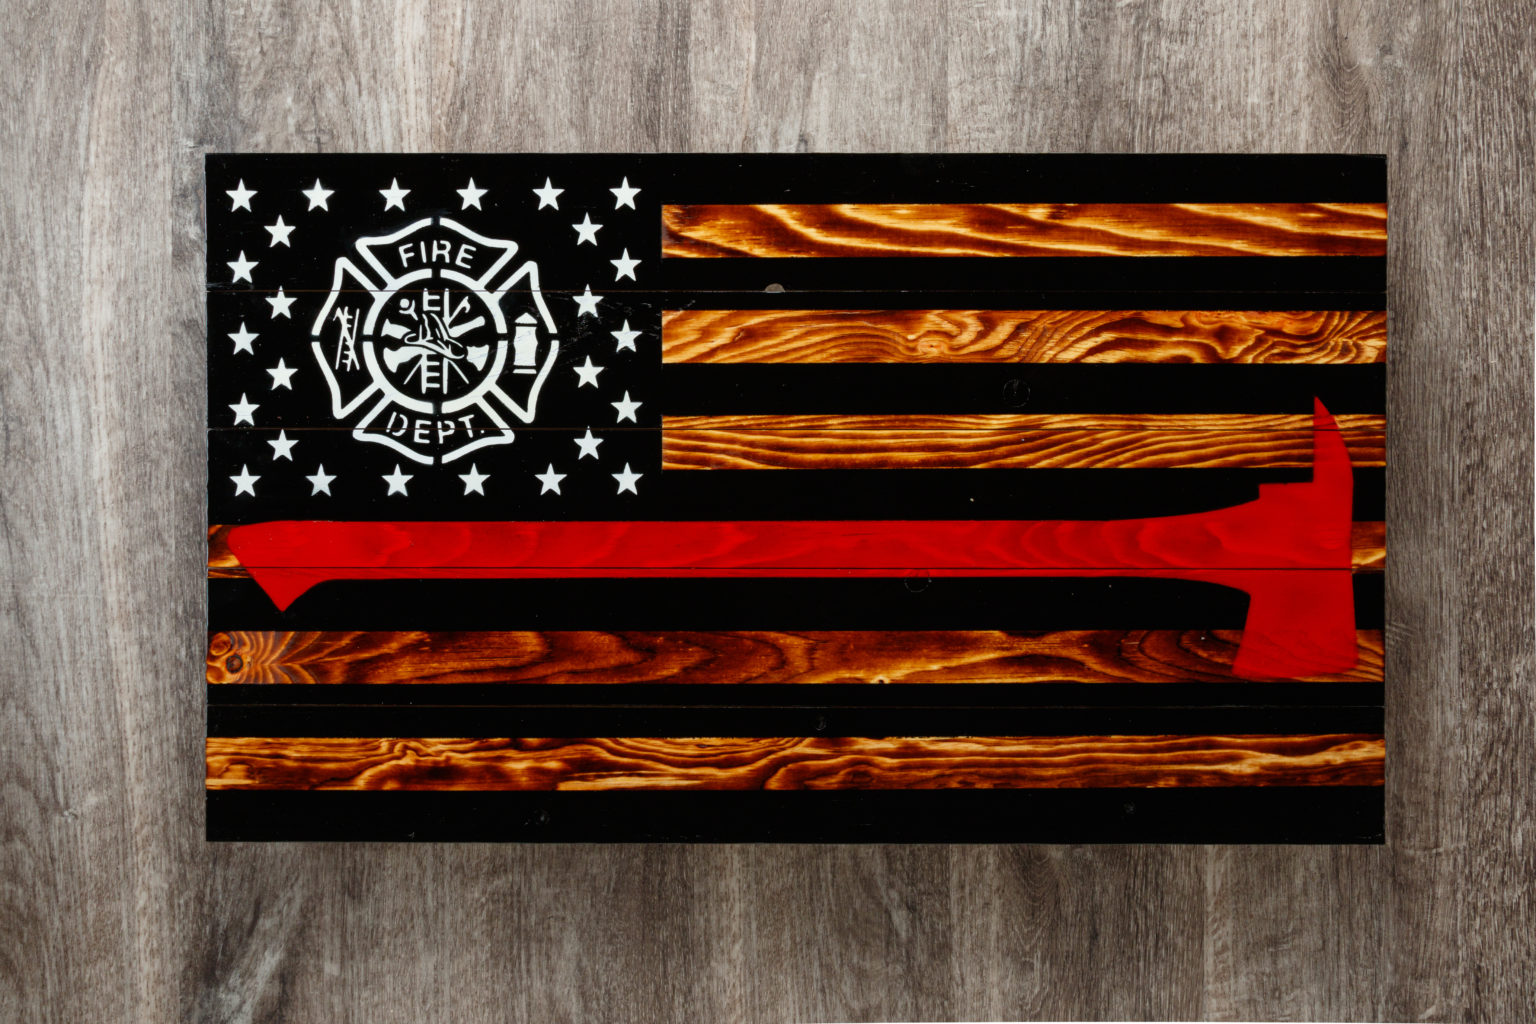 Firefighter wooden American flag wall art